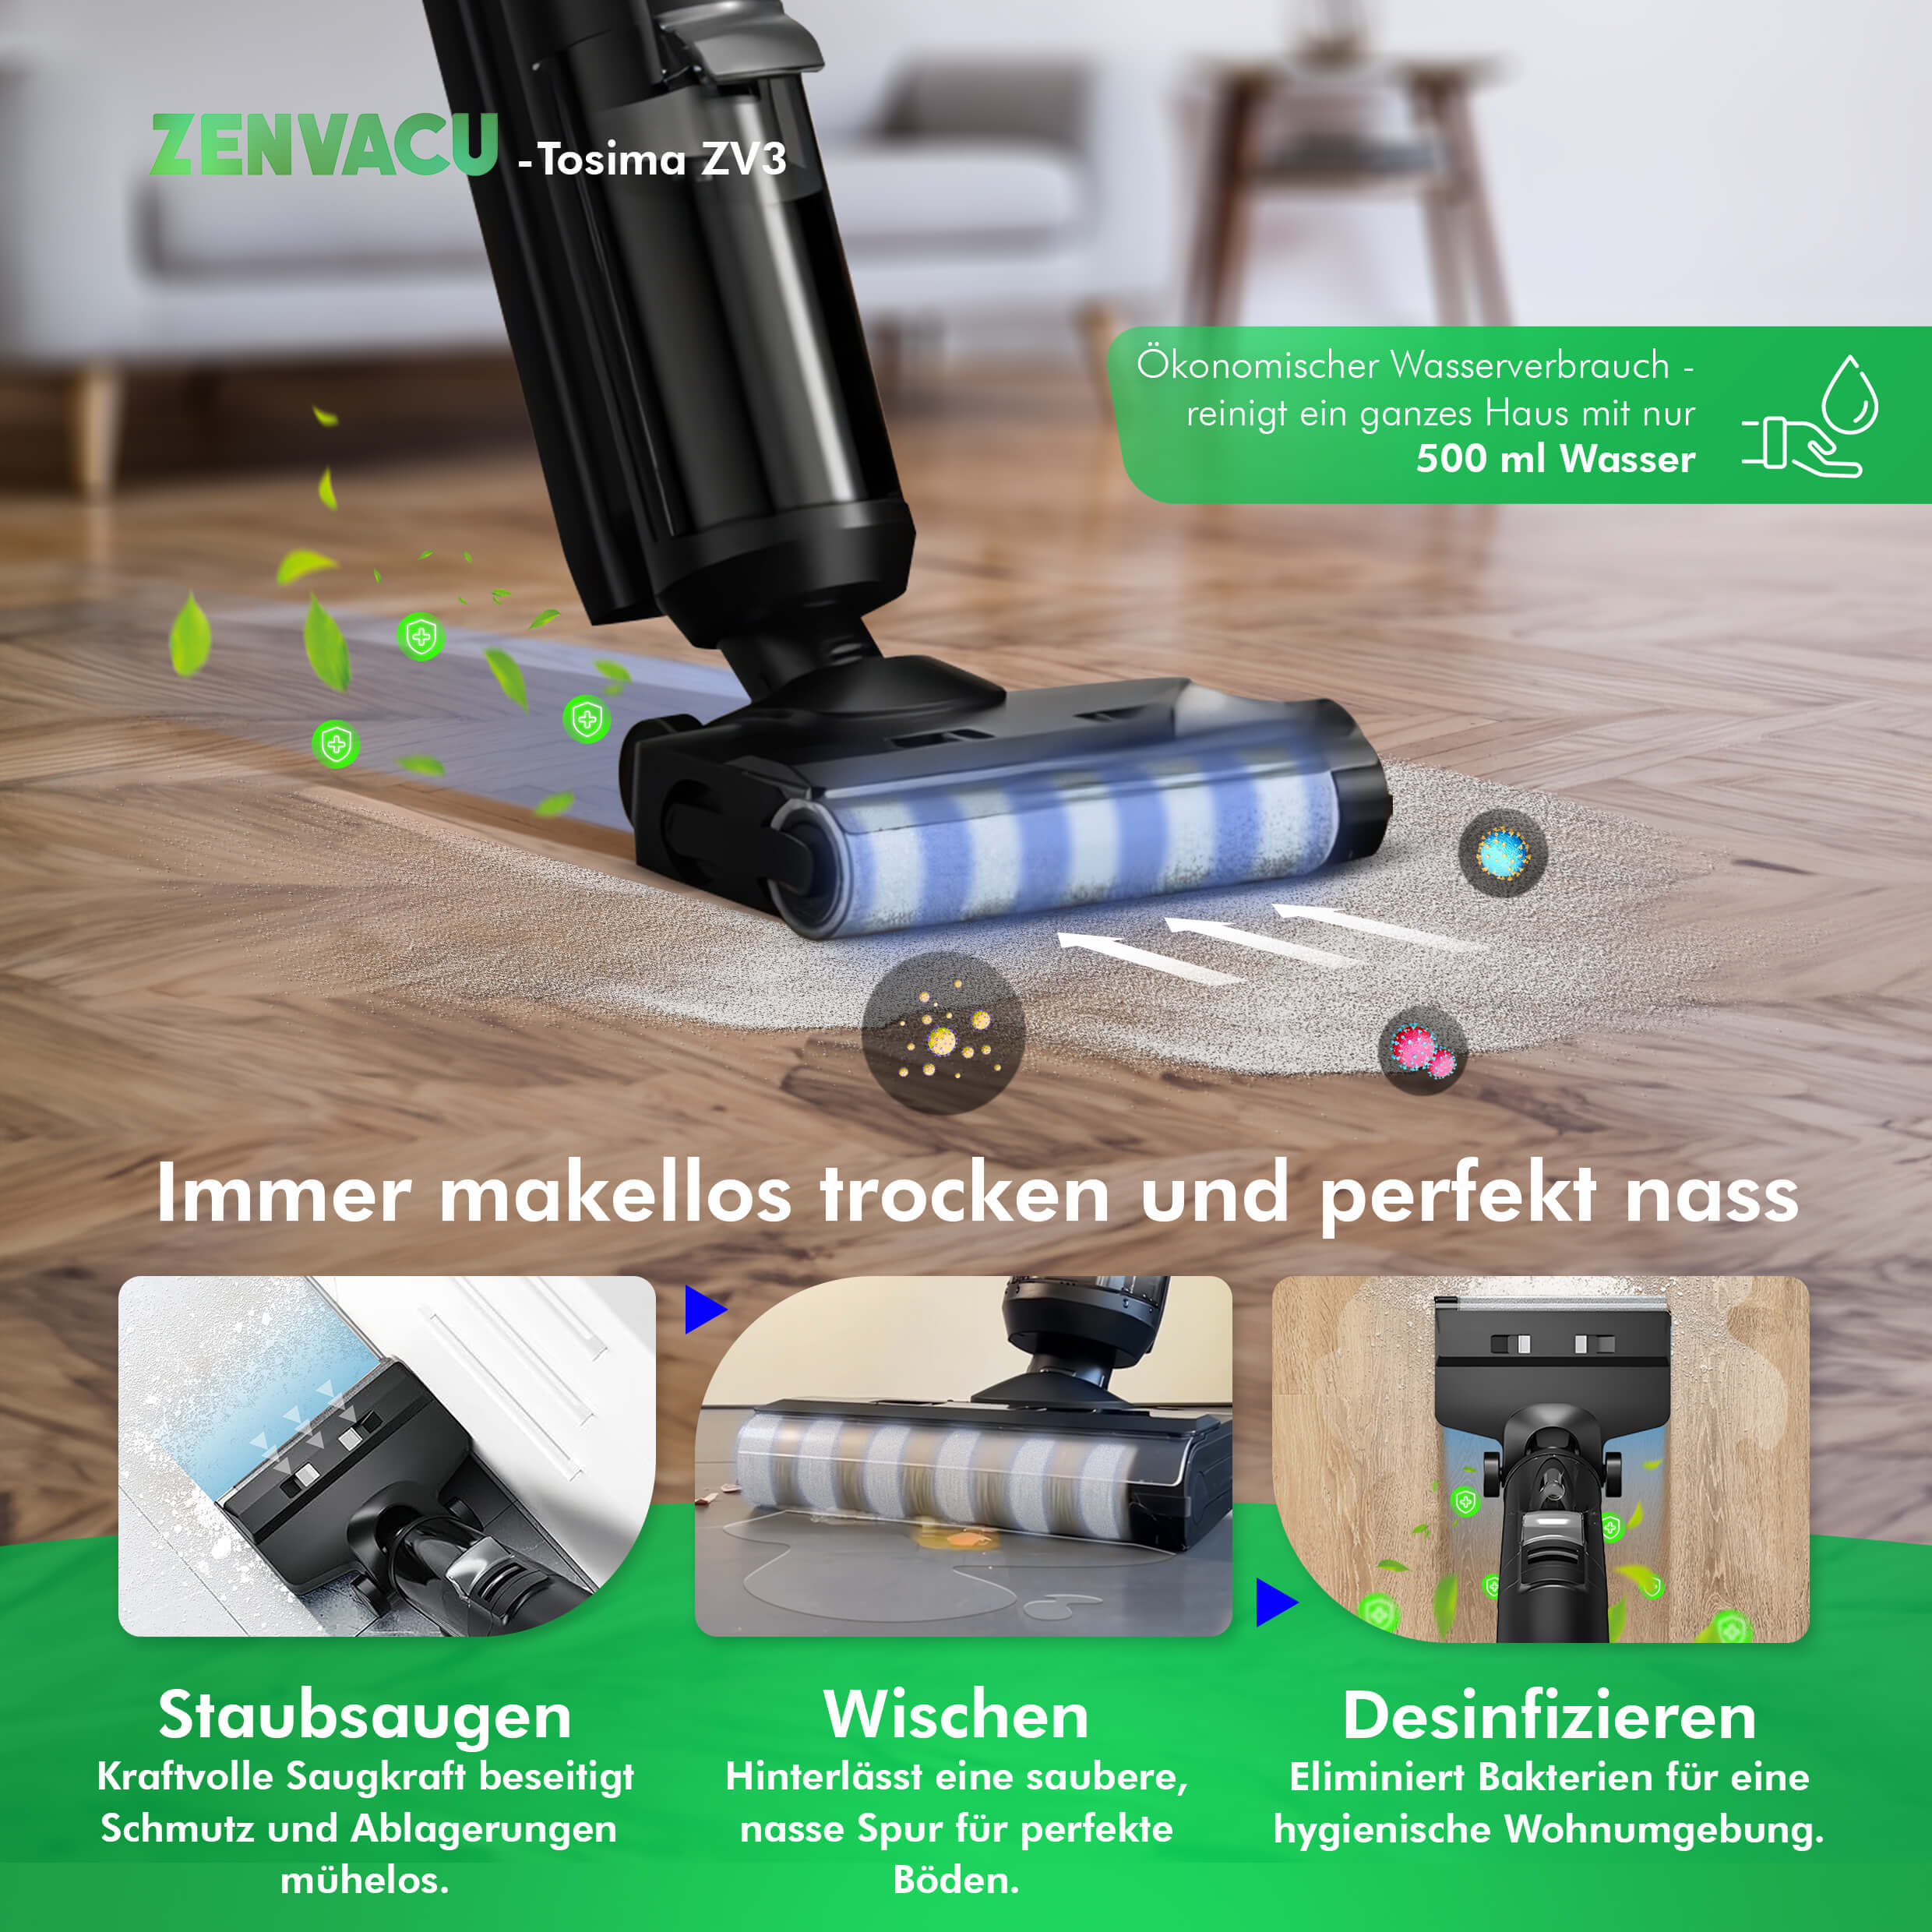 Tosima ZV3 Multi 3-in-1 Stick Vacuum with Mopping - ZenVacu